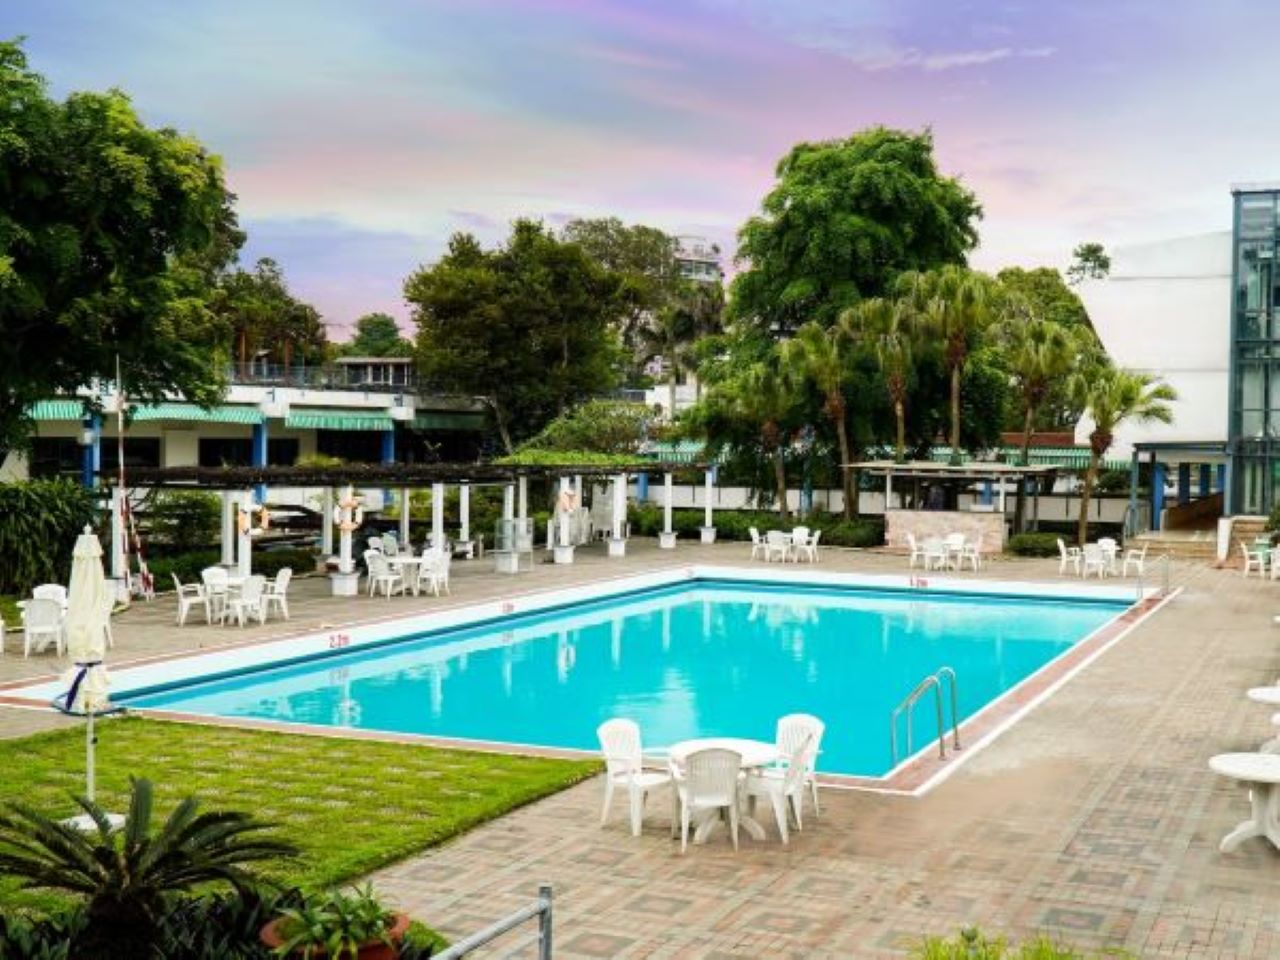 Trải nghiệm bể bơi khách sạn Thắng Lợi view đẹp, dịch vụ hấp dẫn